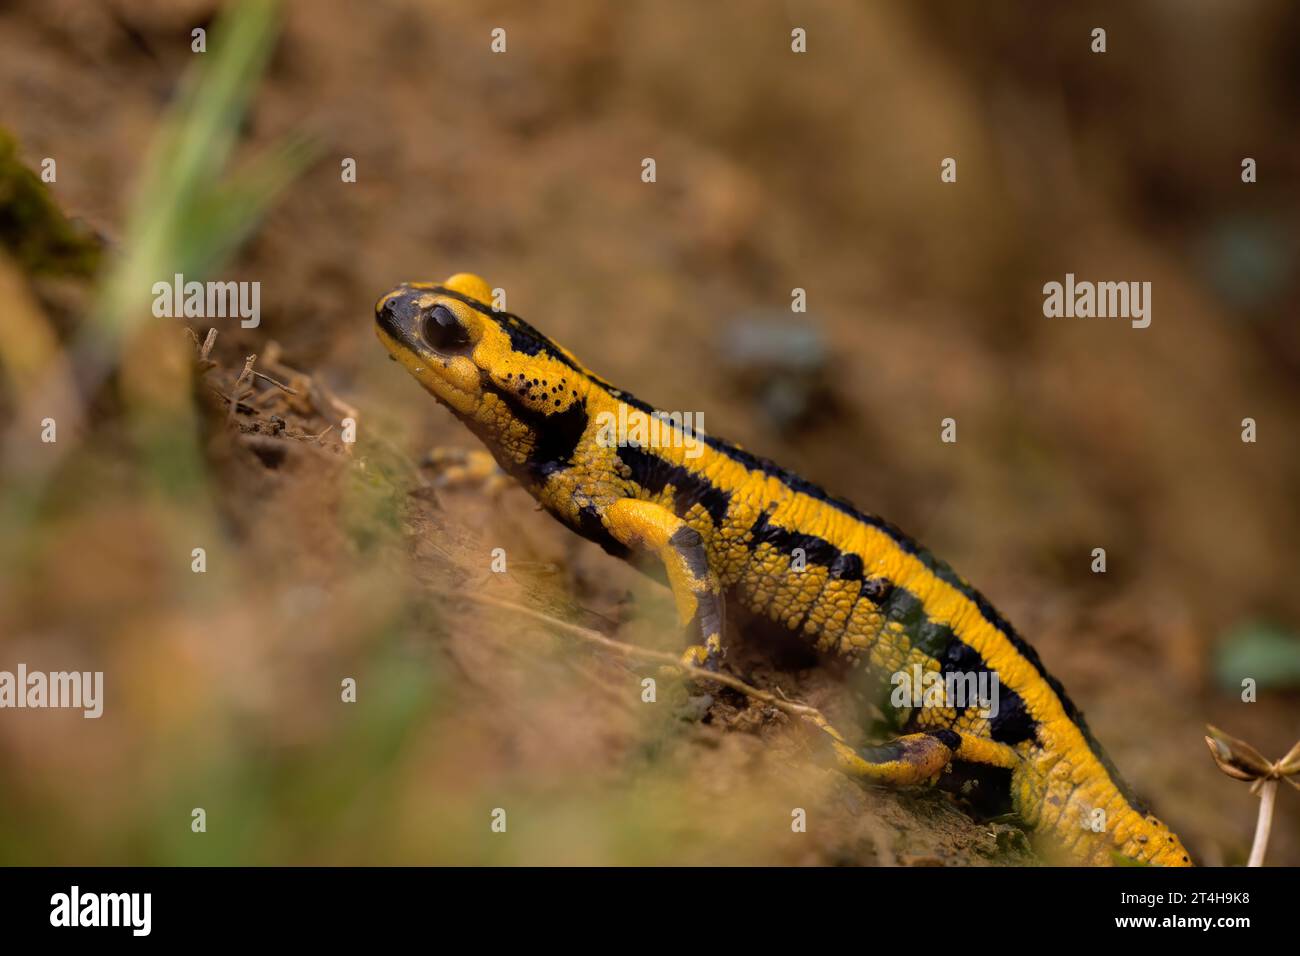 salamandra amarilla y negra caminando en el barro del bosque, anfibios de vida libre en la naturaleza, fotografía macro horizontal. copiar espacio Foto de stock